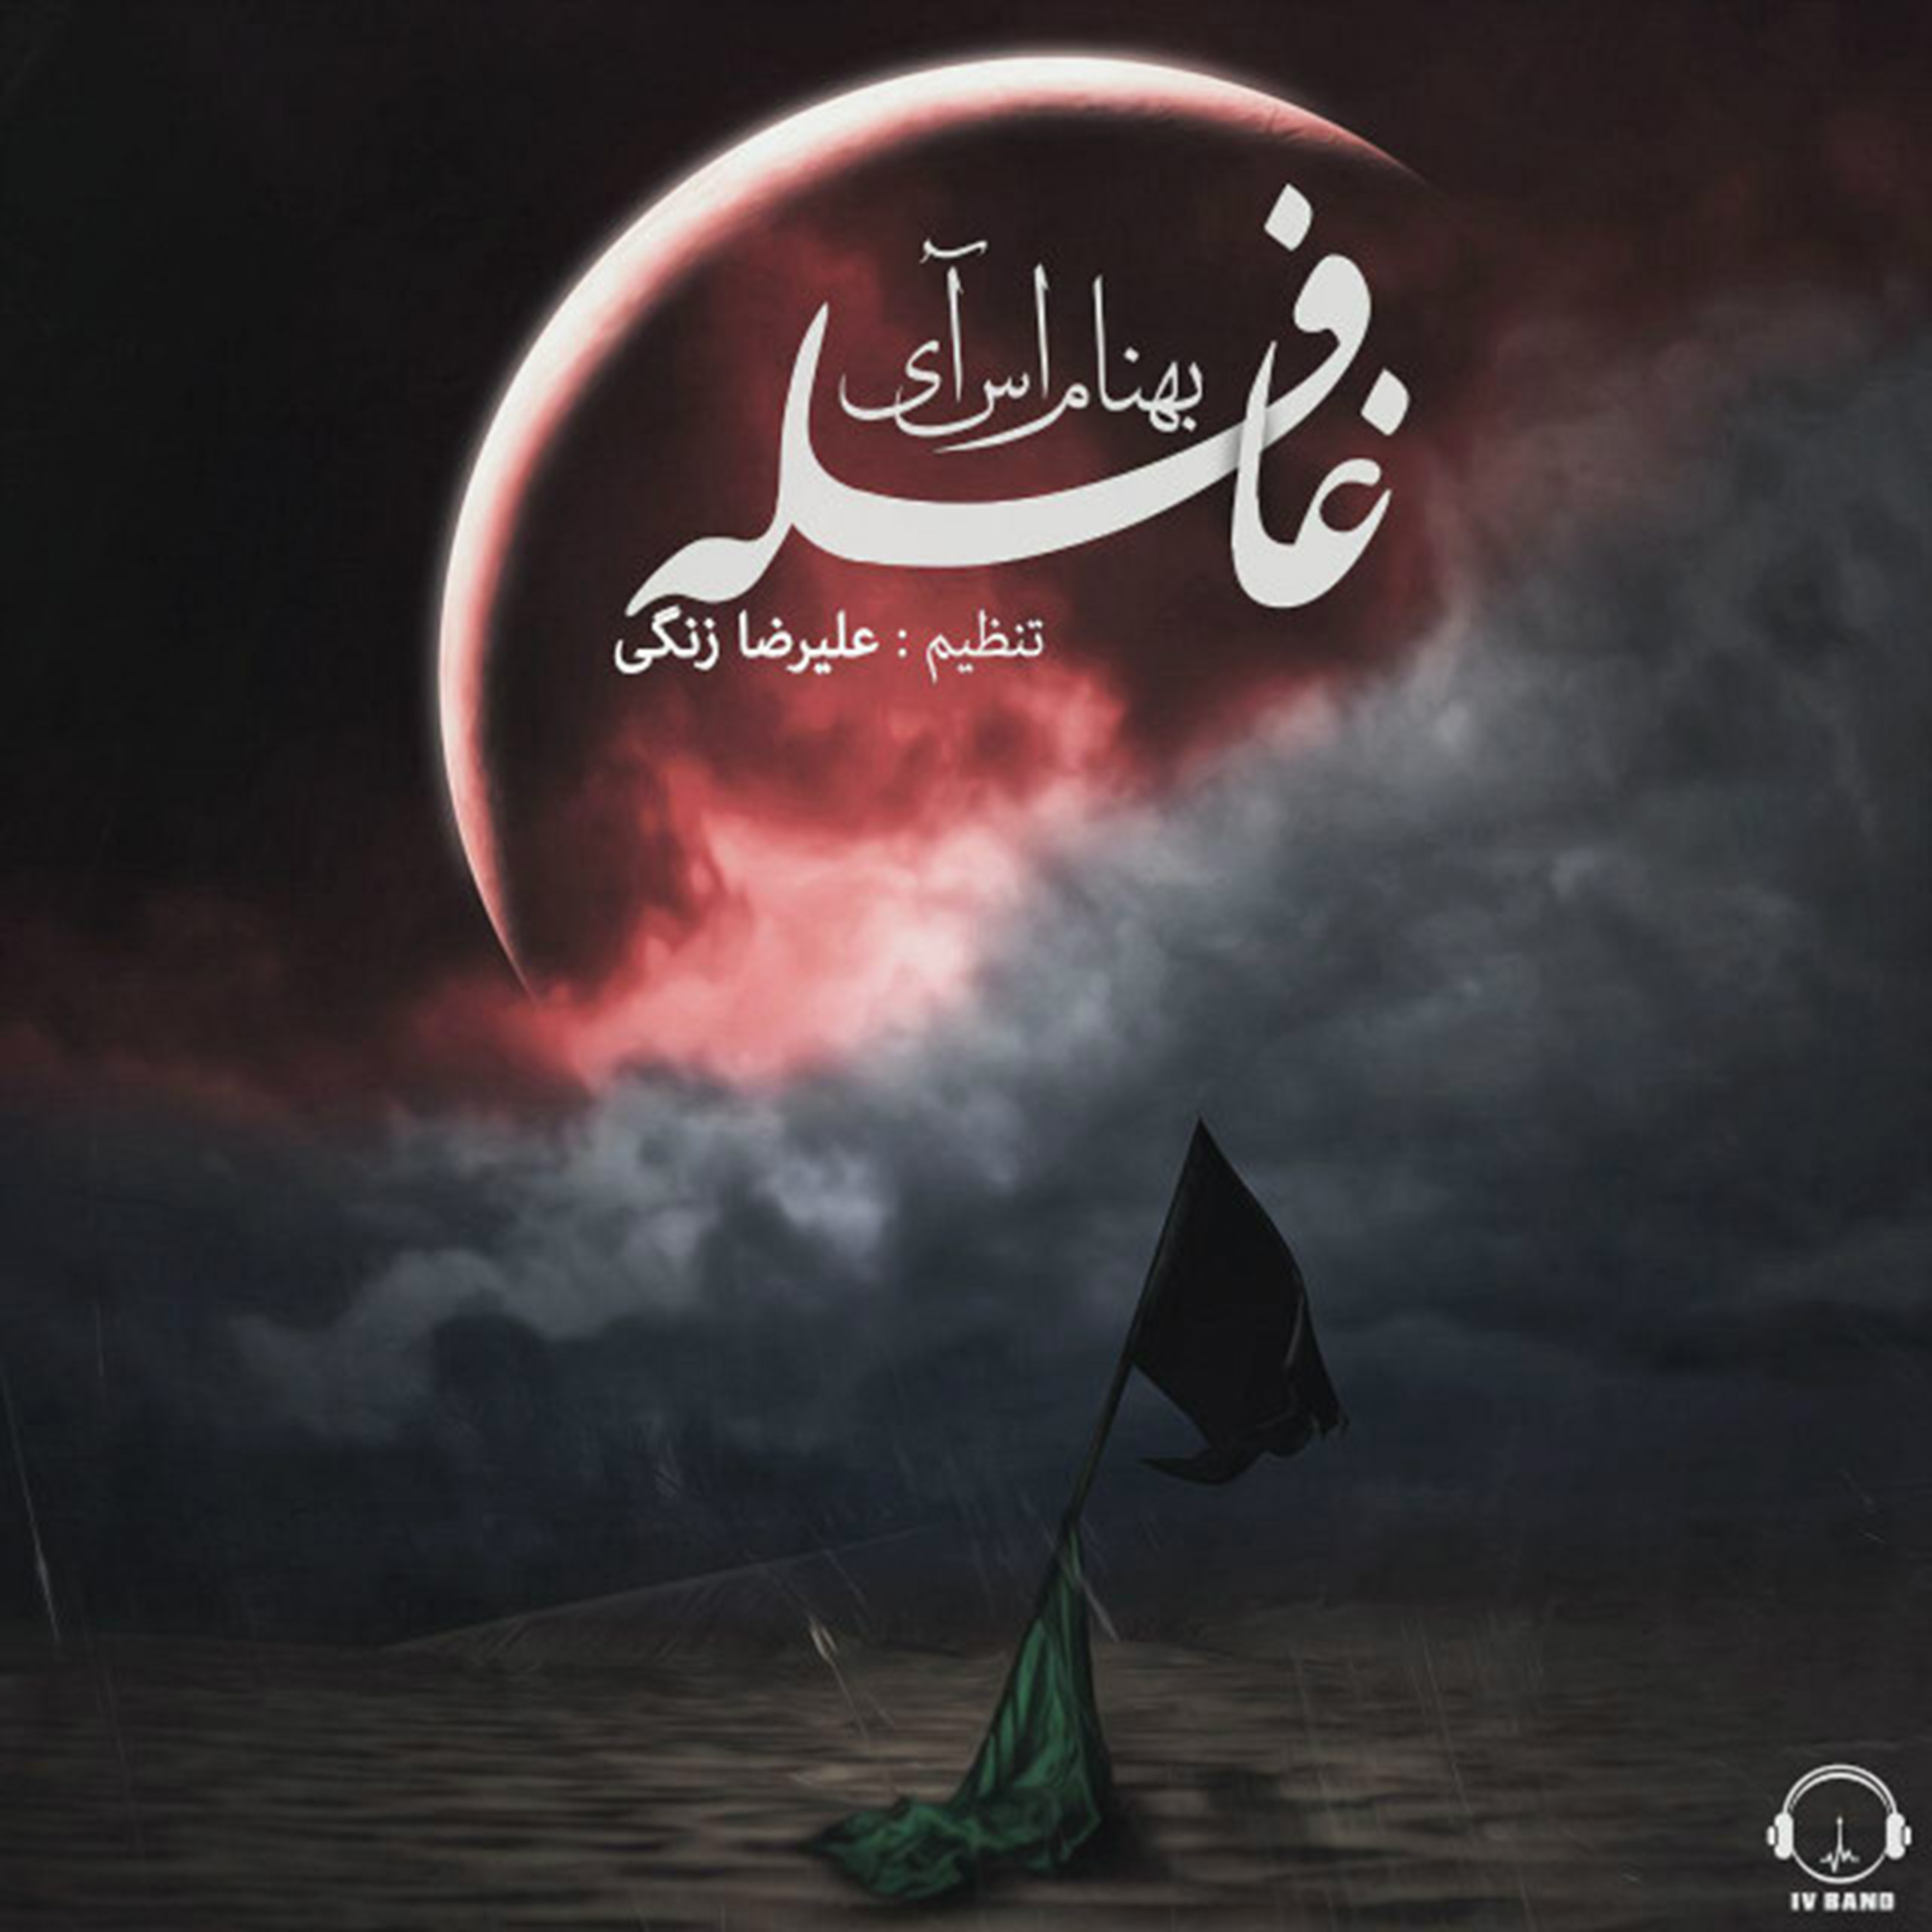  دانلود آهنگ جدید بهنام سی - قافله | Download New Music By Behnam SI - Ghafele